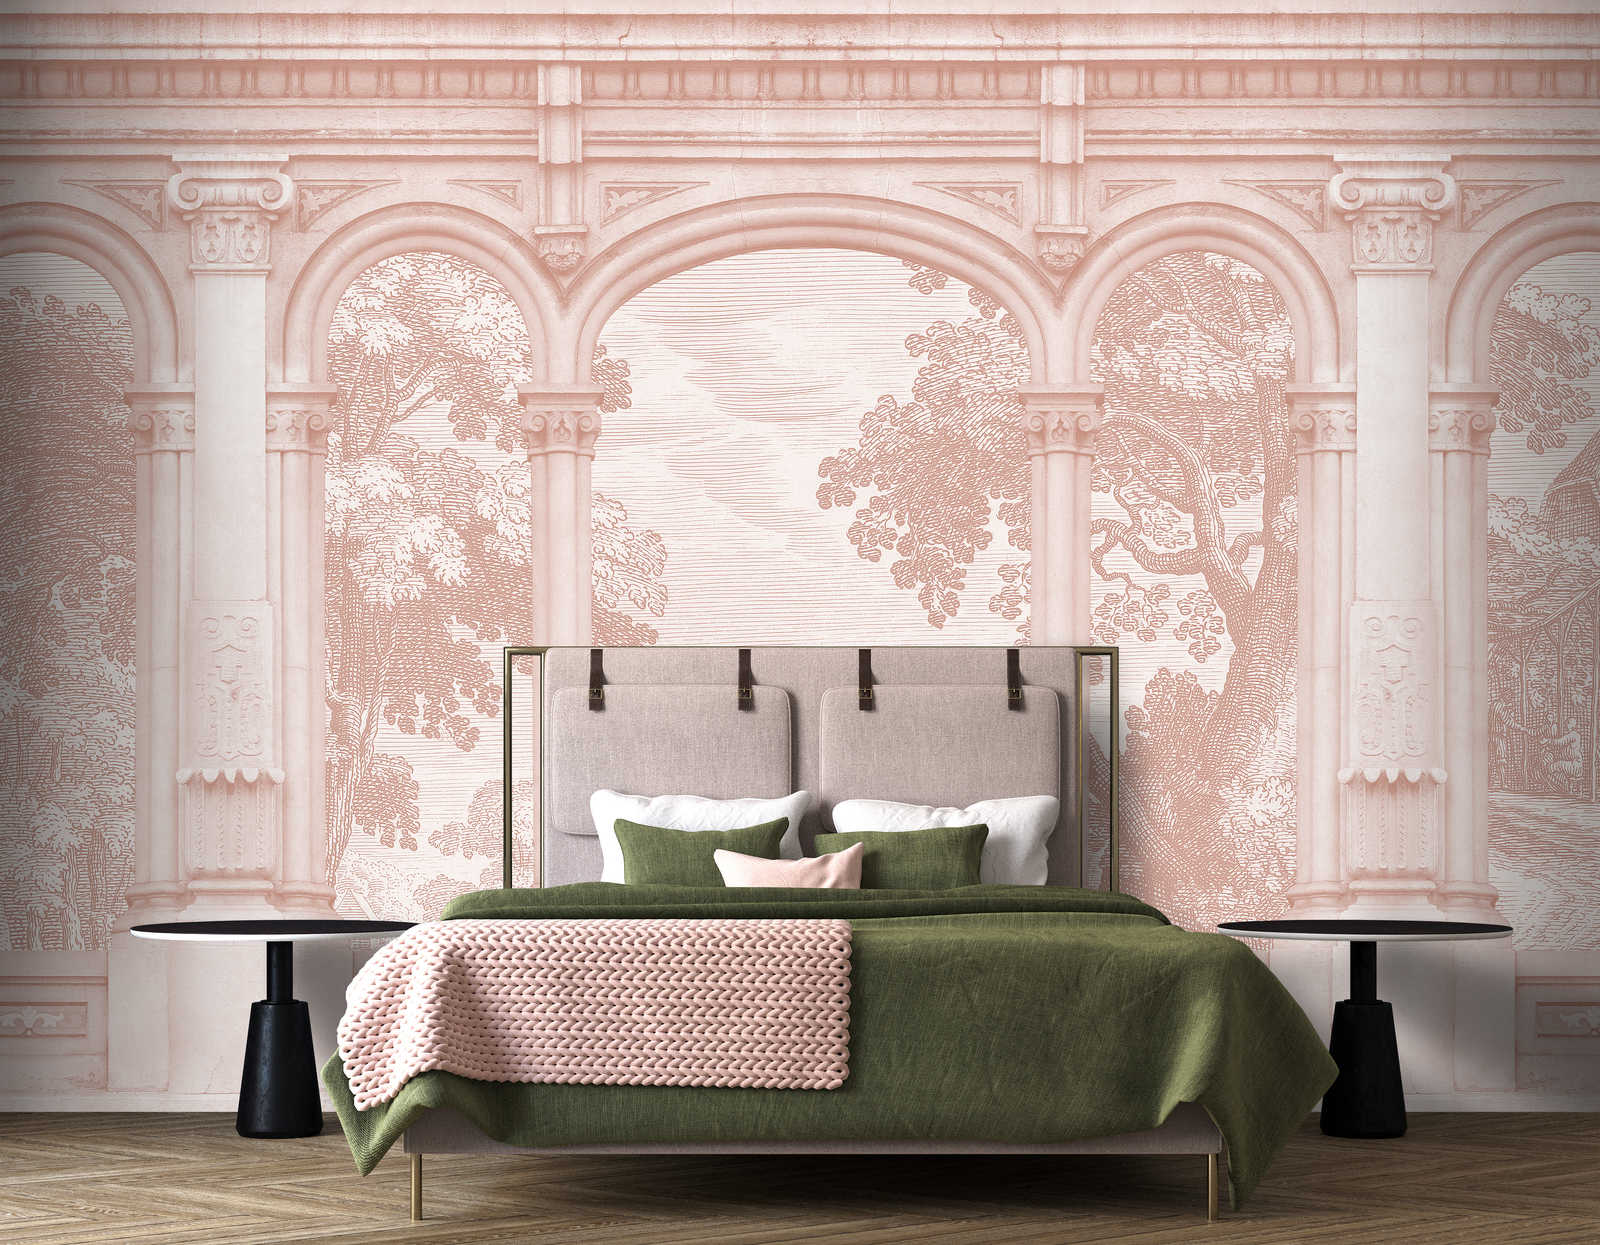             Roma 3 - Papel pintado rosa Diseño histórico con ventana de arco redondo
        